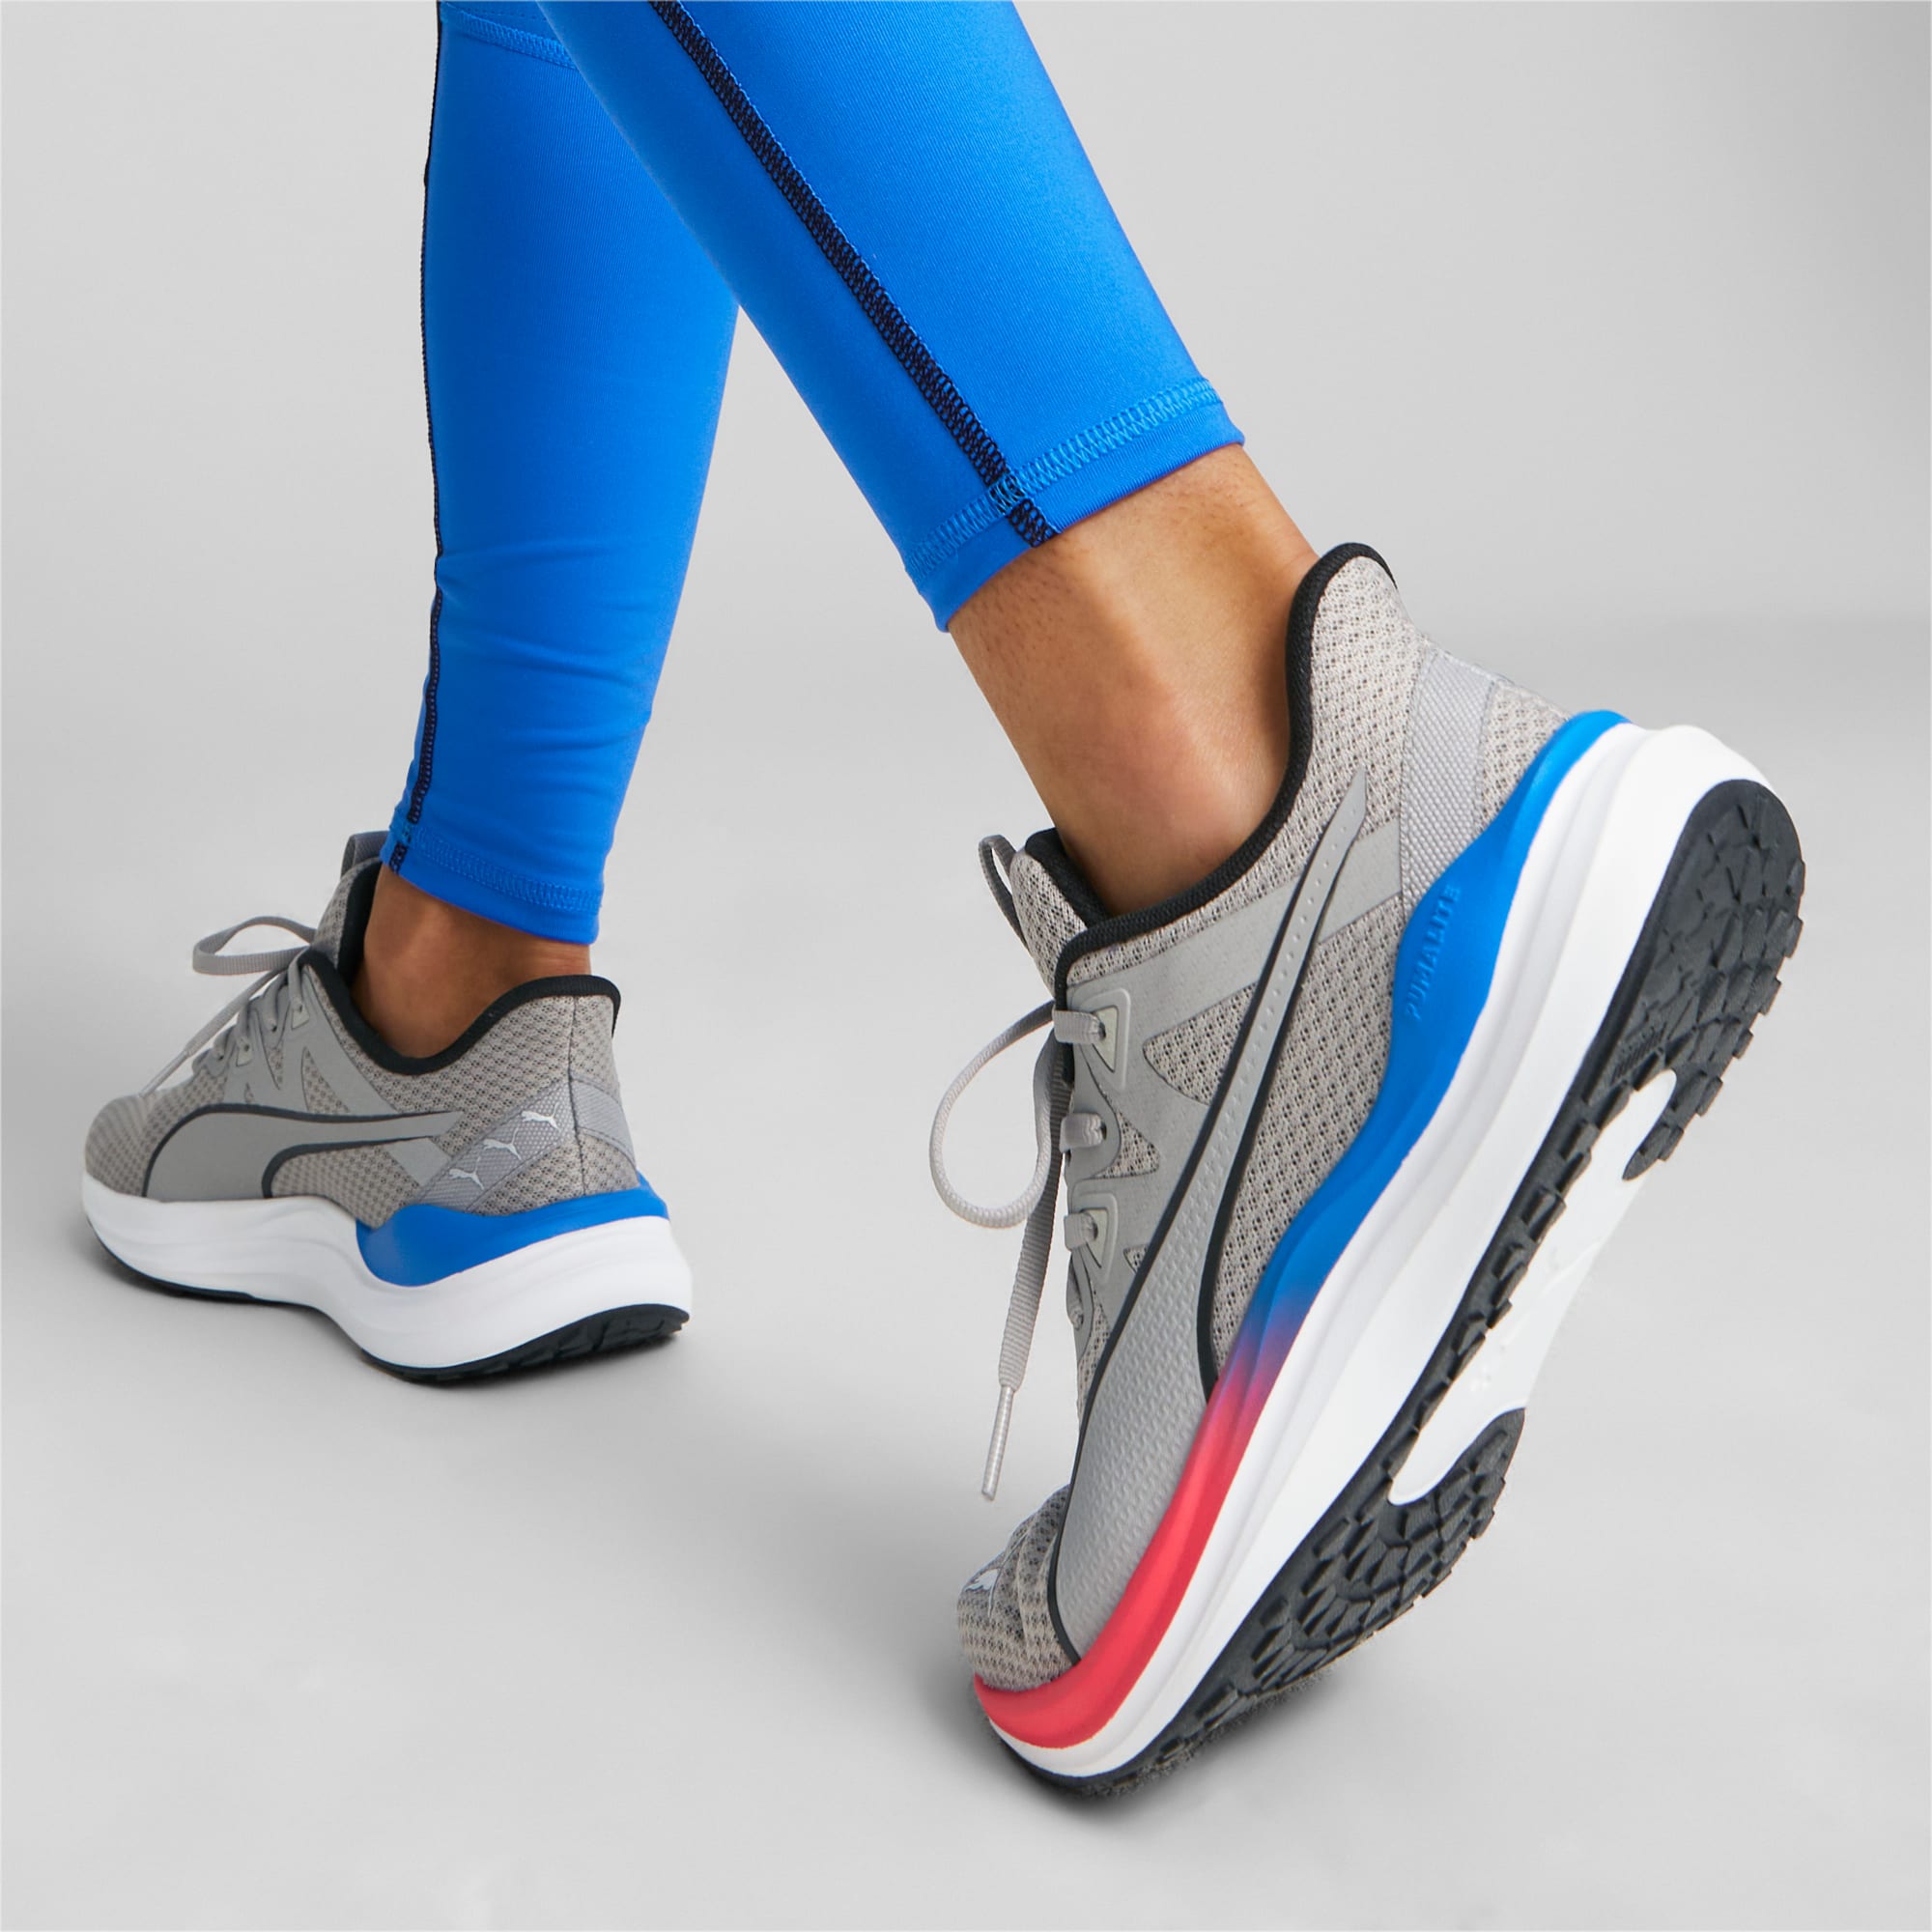 PUMA Chaussures De Running Reflect Lite, Gris/Bleu/Rose